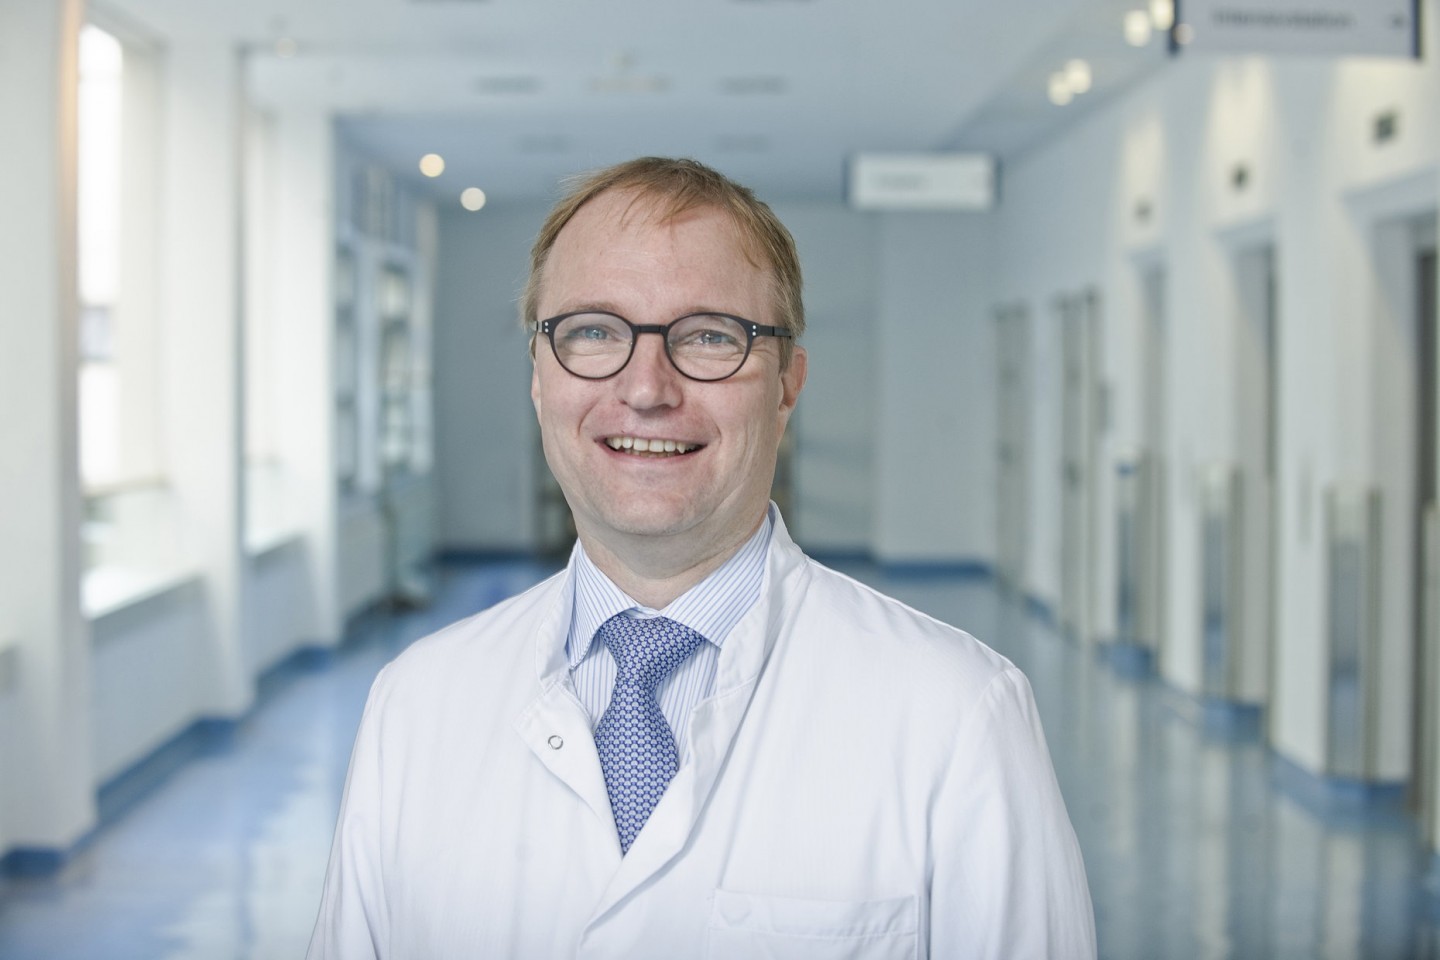 Dr. Gröschel